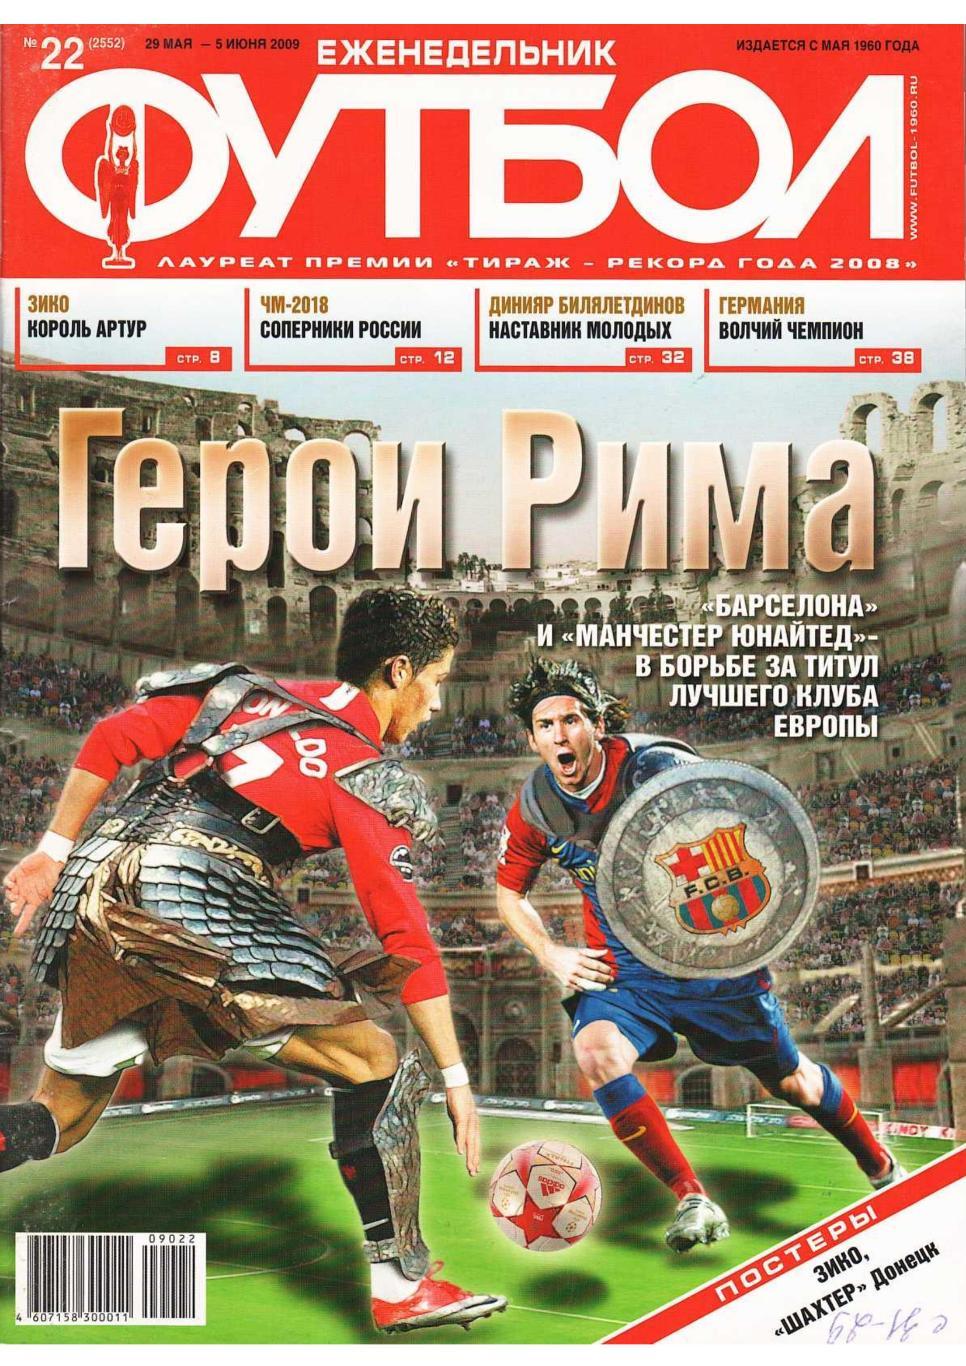 Еженедельник «Футбол». № 22. 29 мая – 5 июня 2009.